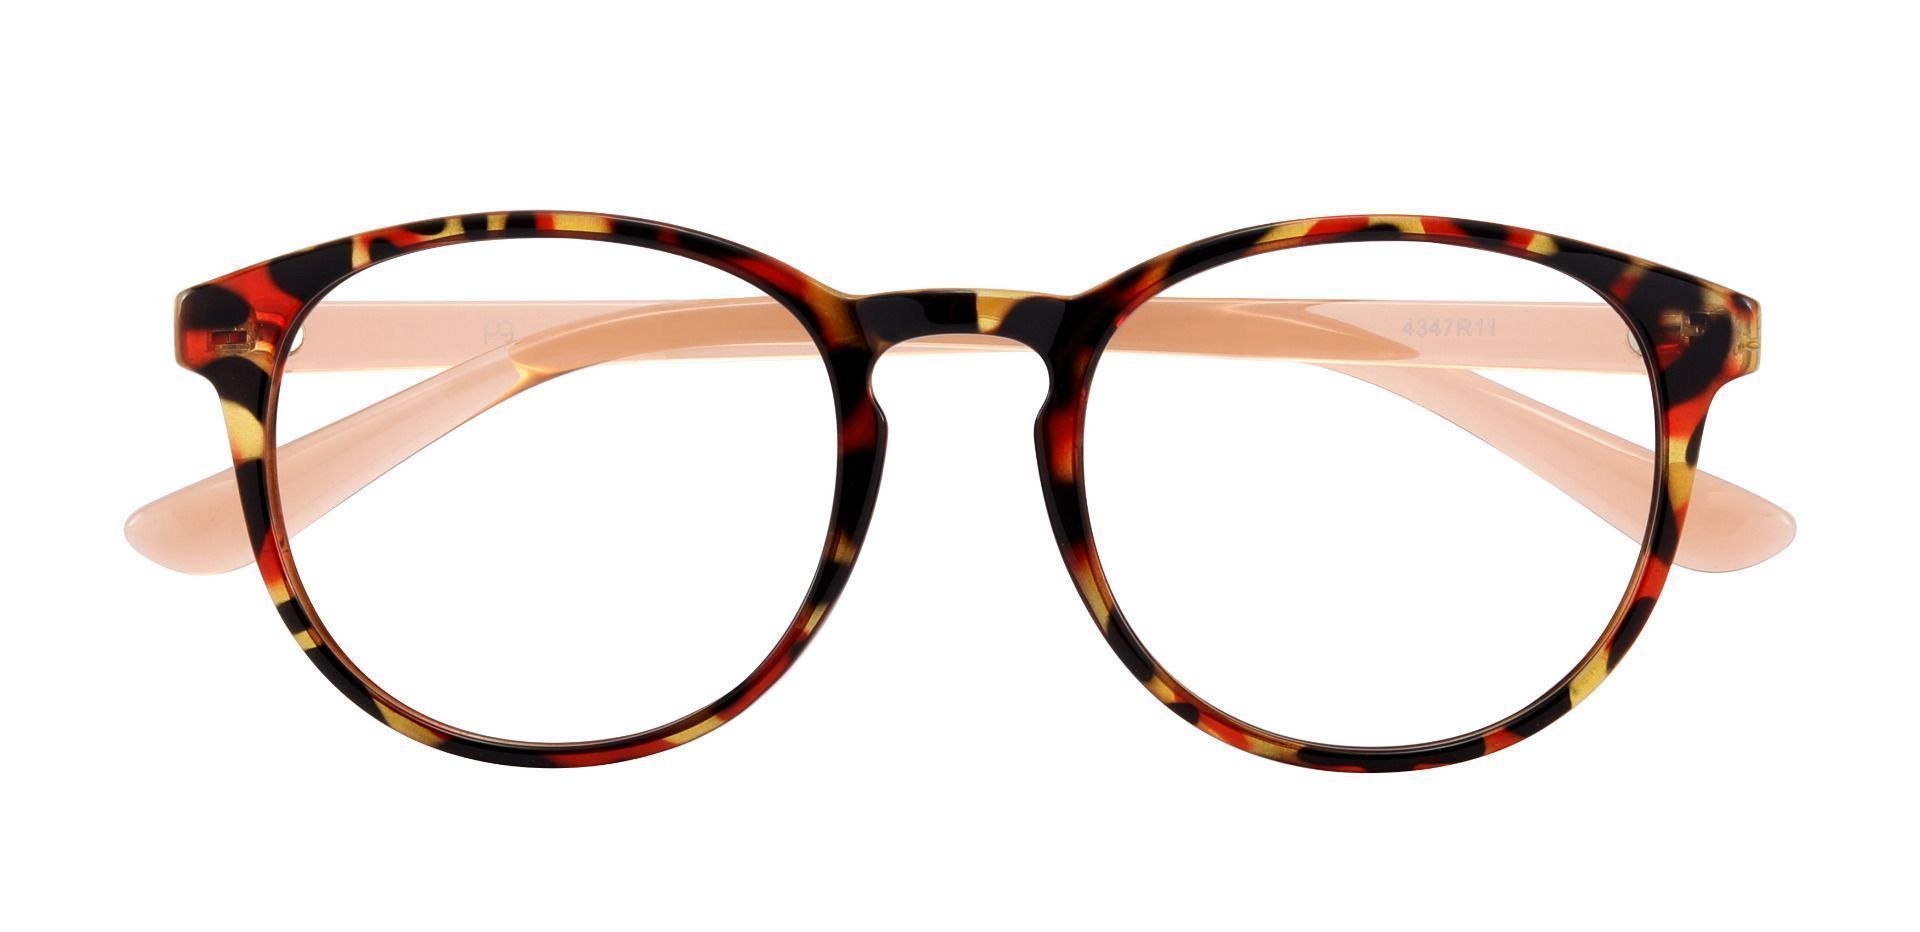 Clarita Oval Progressive Glasses - Red